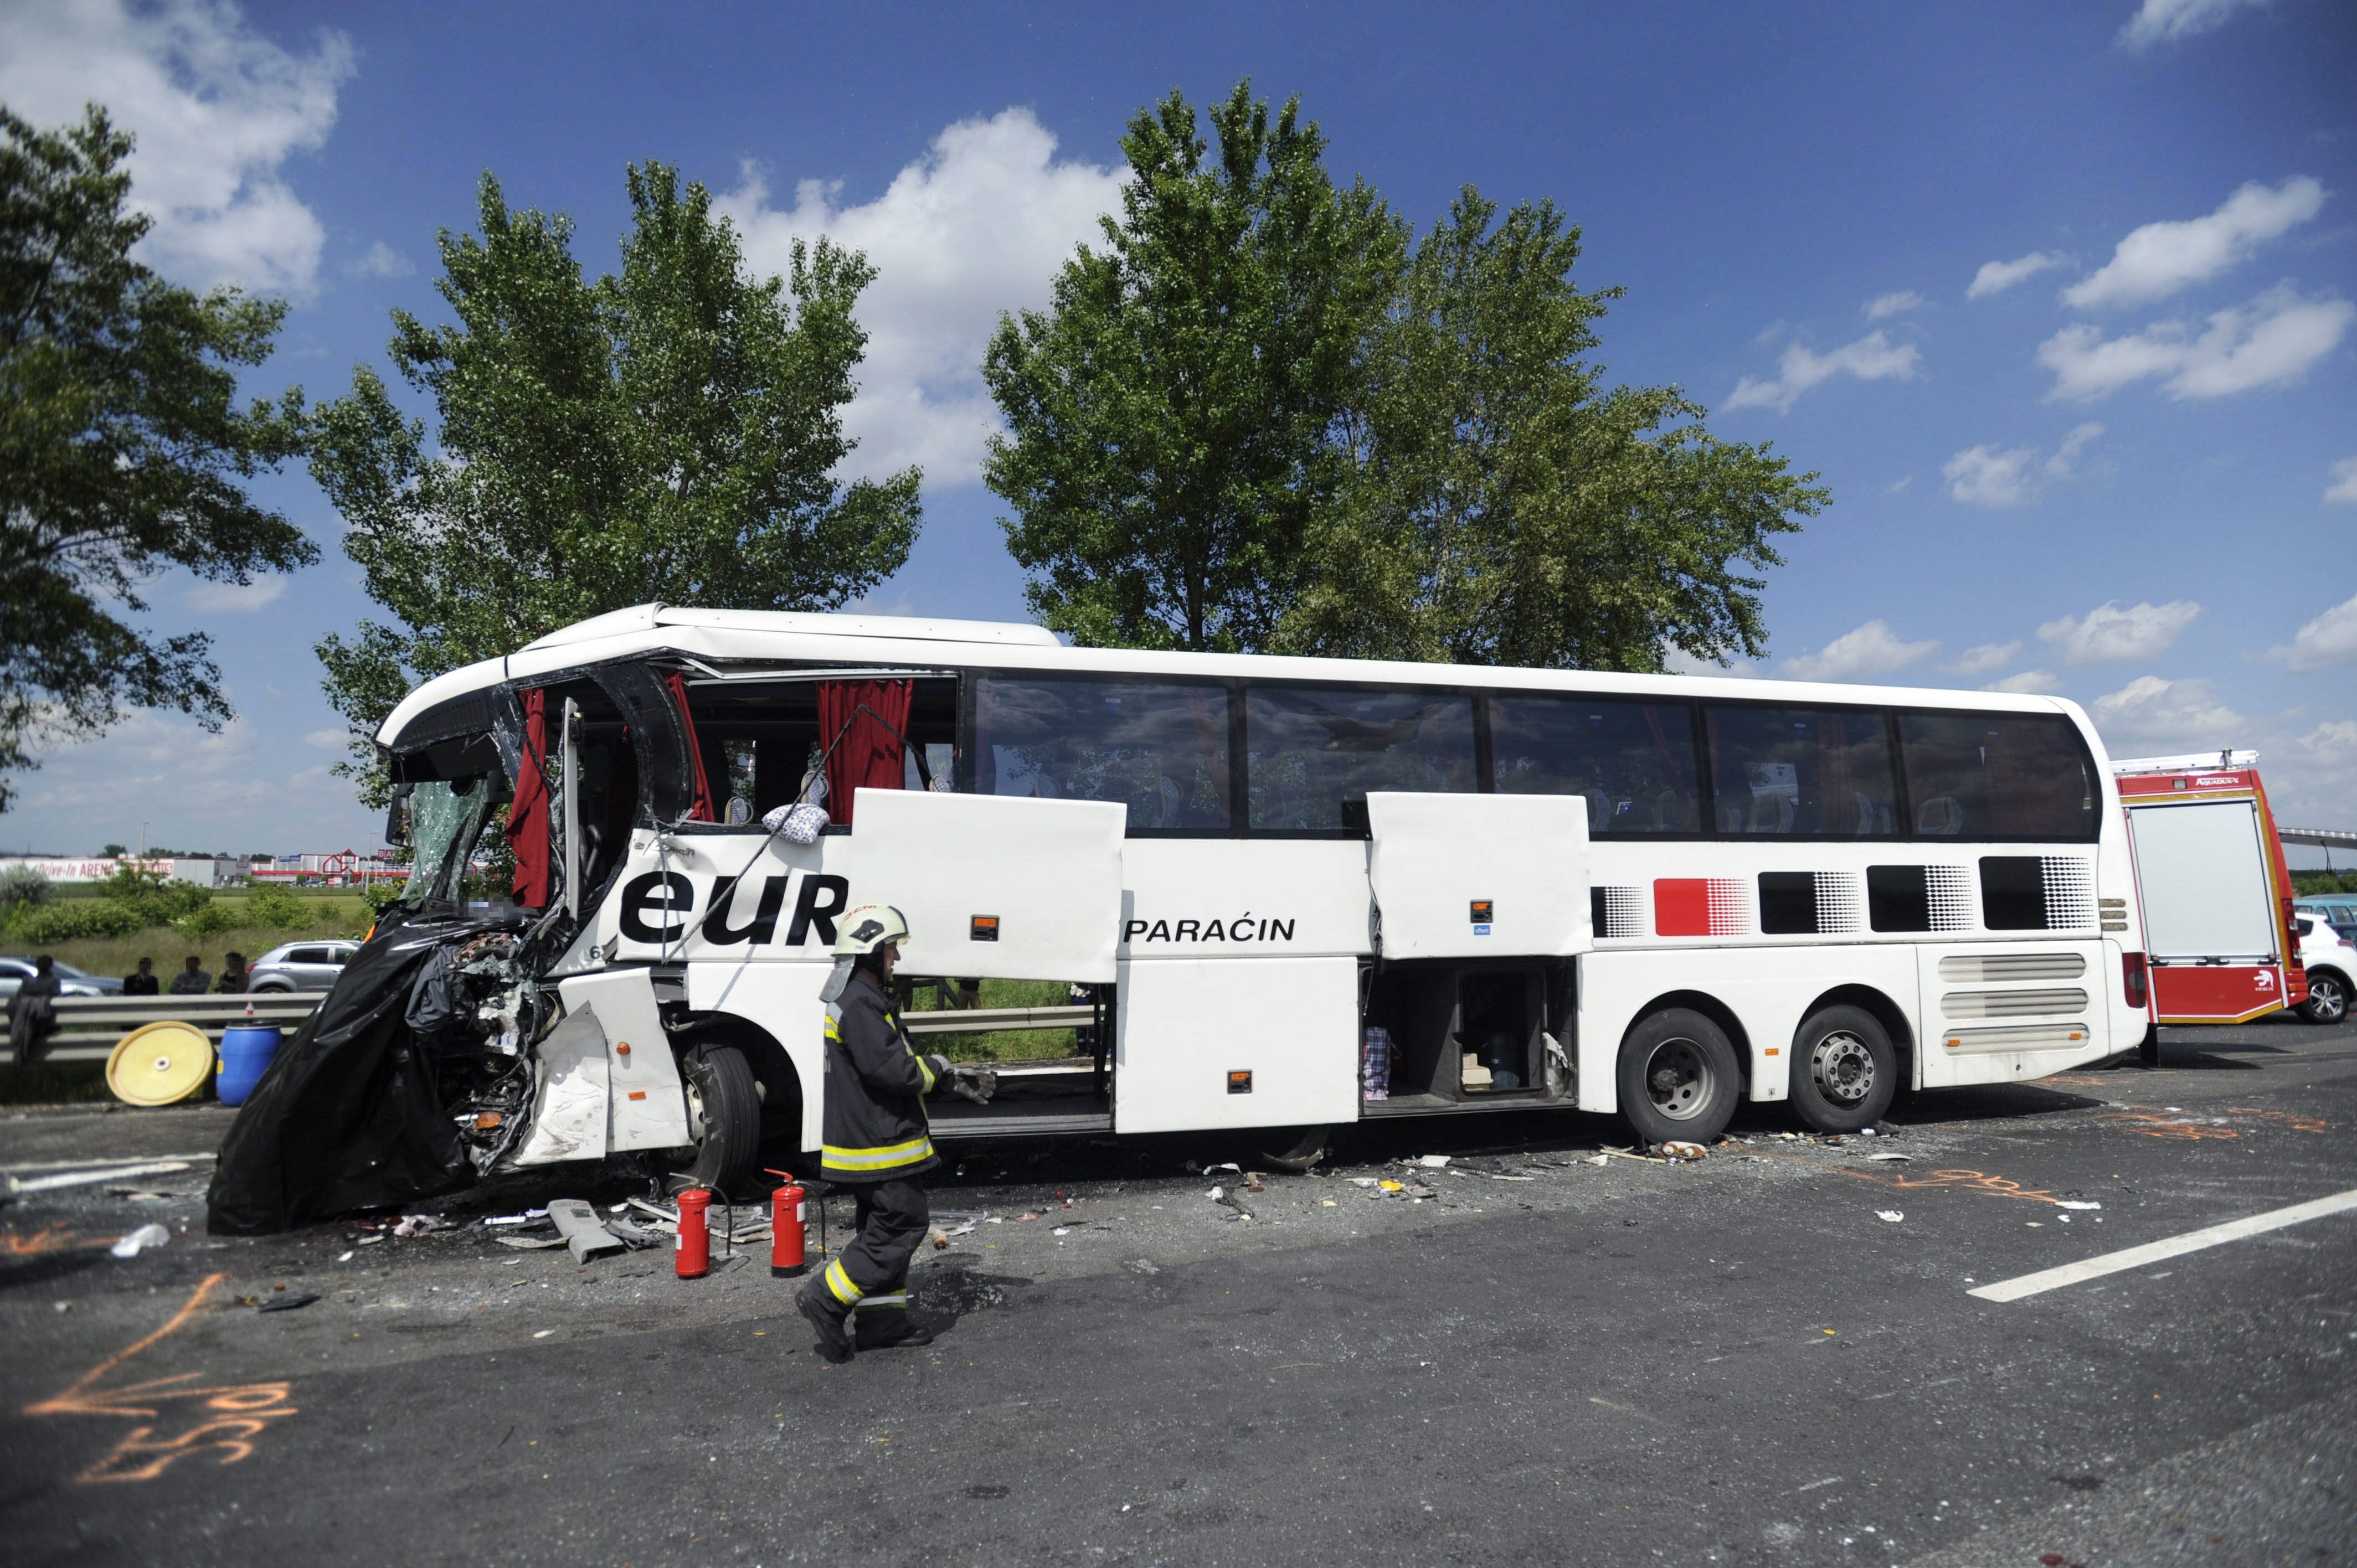 19 embert vittek kórházba, miután az M0-son pályakarbantartó autónak rohant egy szerb turistabusz